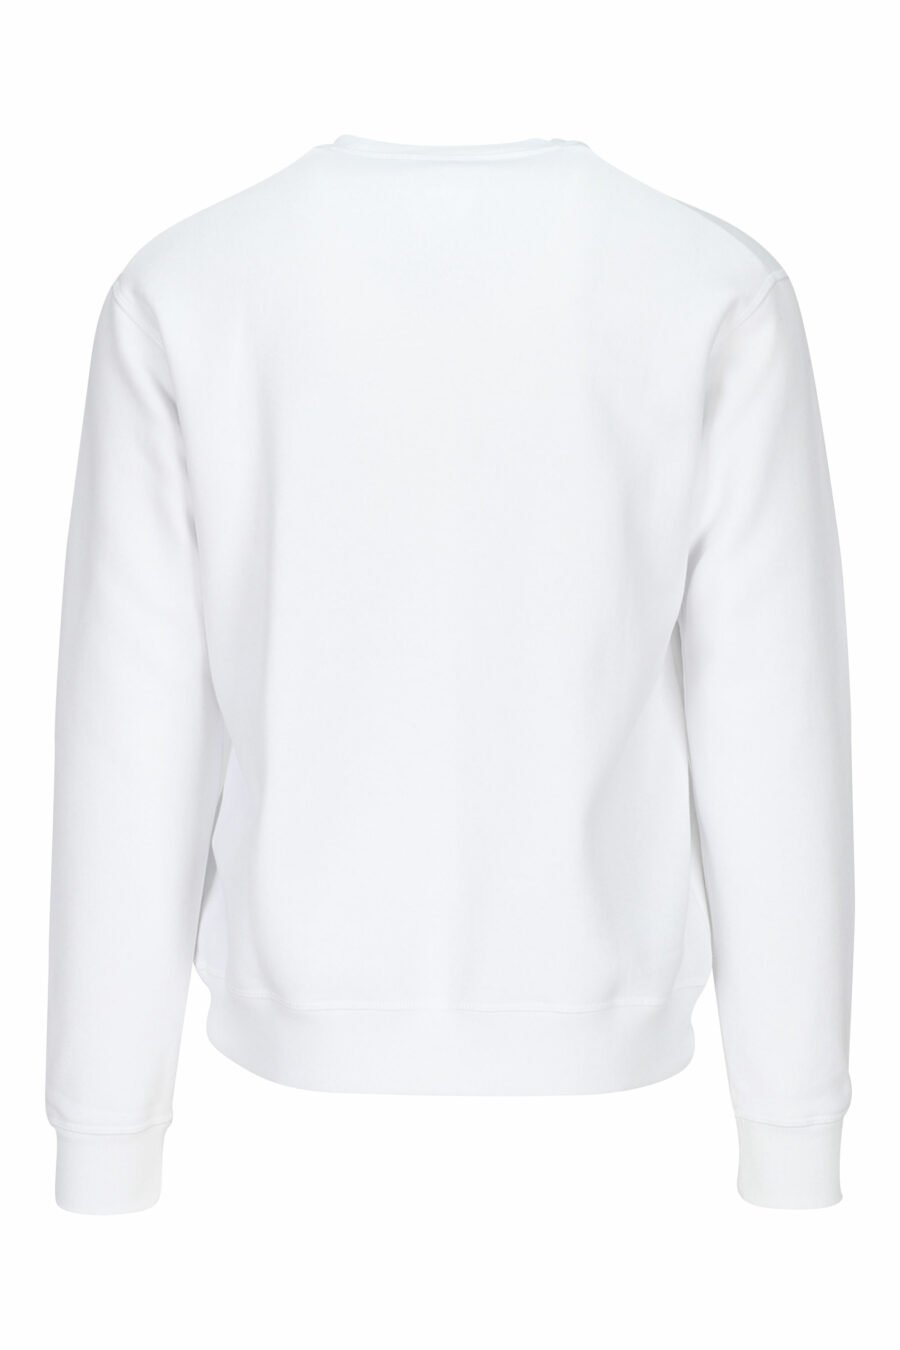 Weißes Sweatshirt mit getragenen roten Blättern Maxilogo - 8054148088002 1